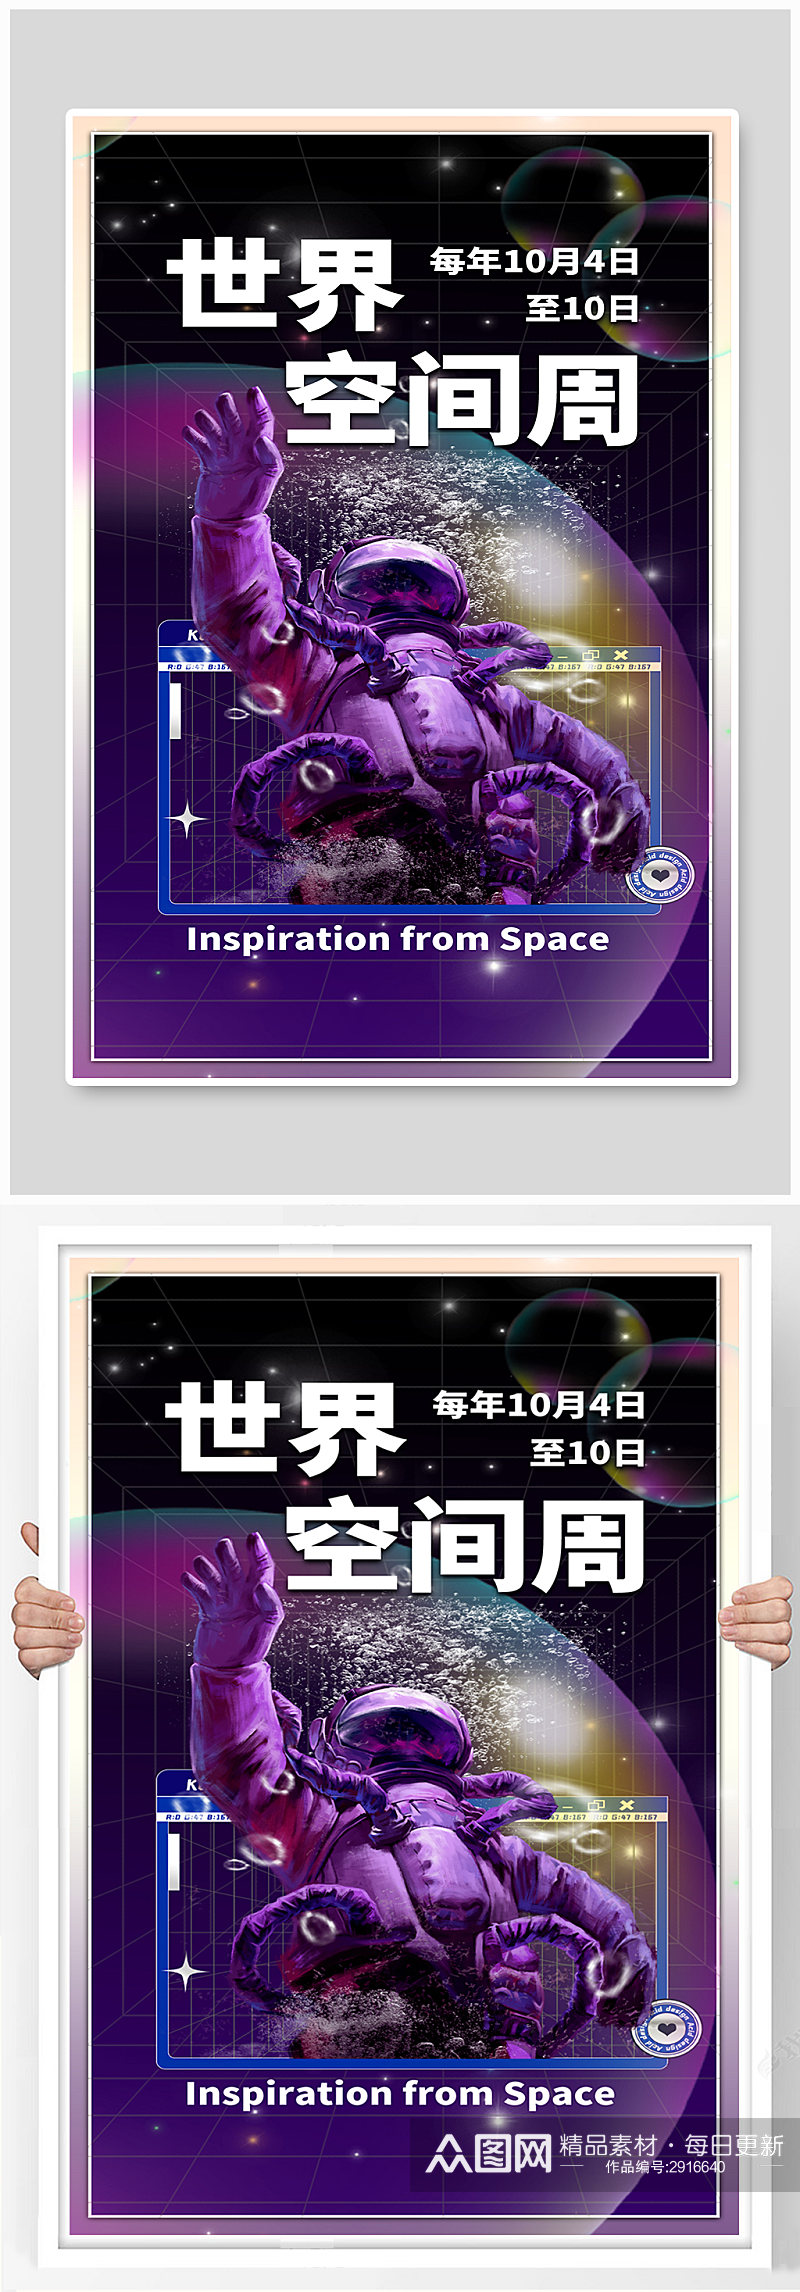 世界空间周宇航员紫色酸性海报素材